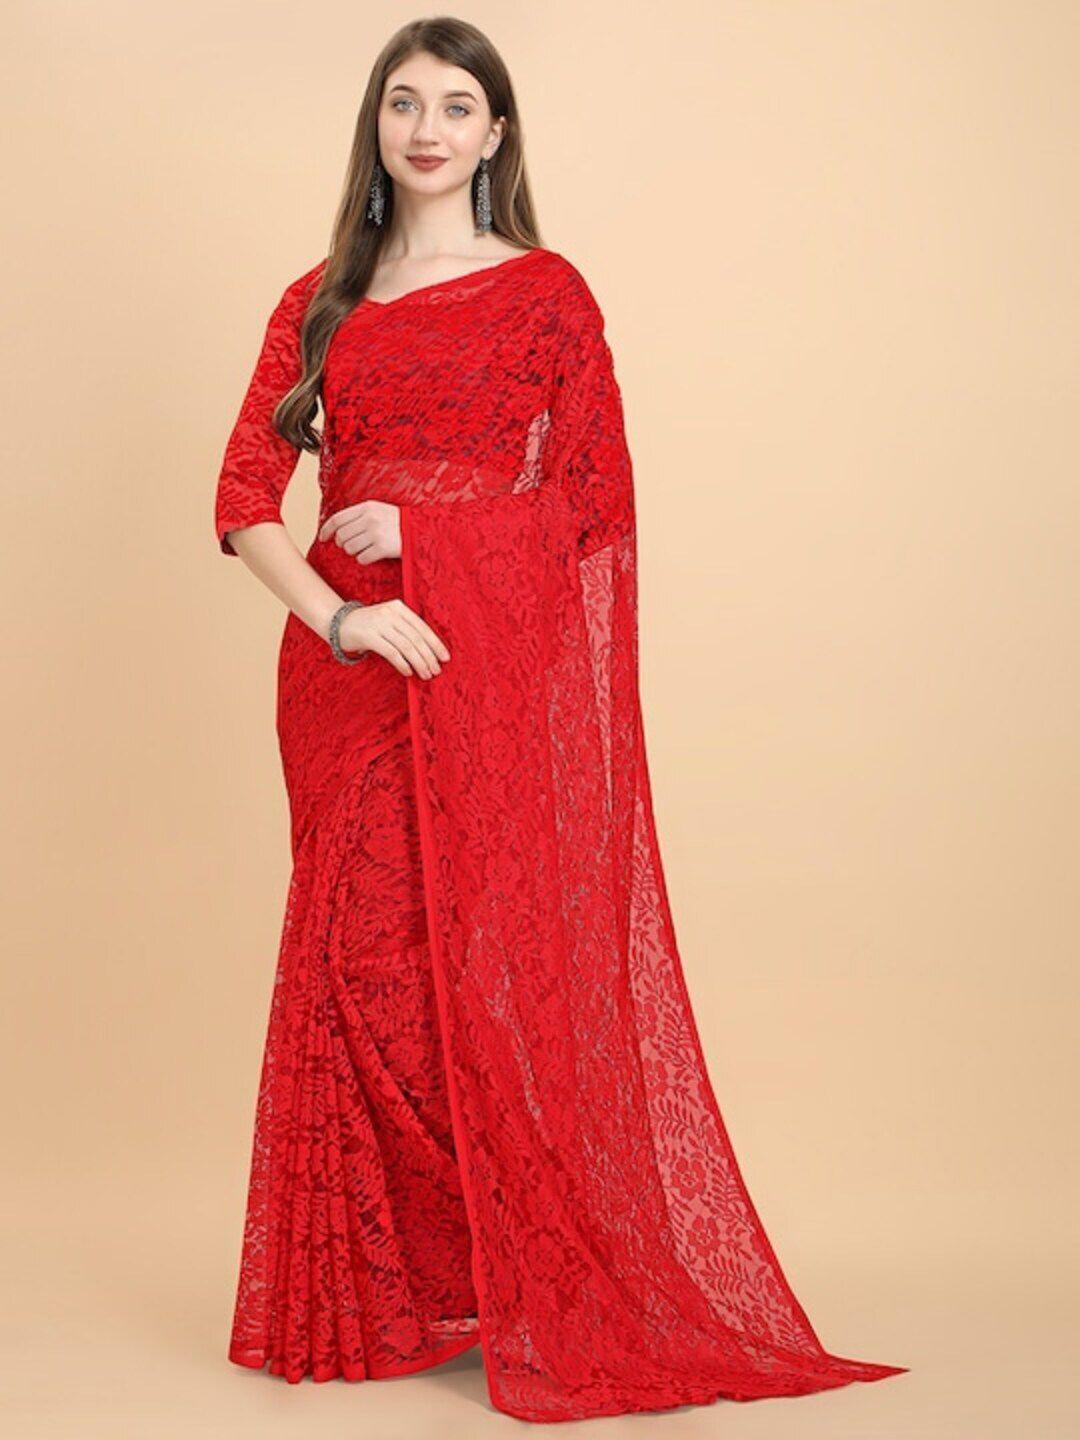 moksha designs red floral net saree